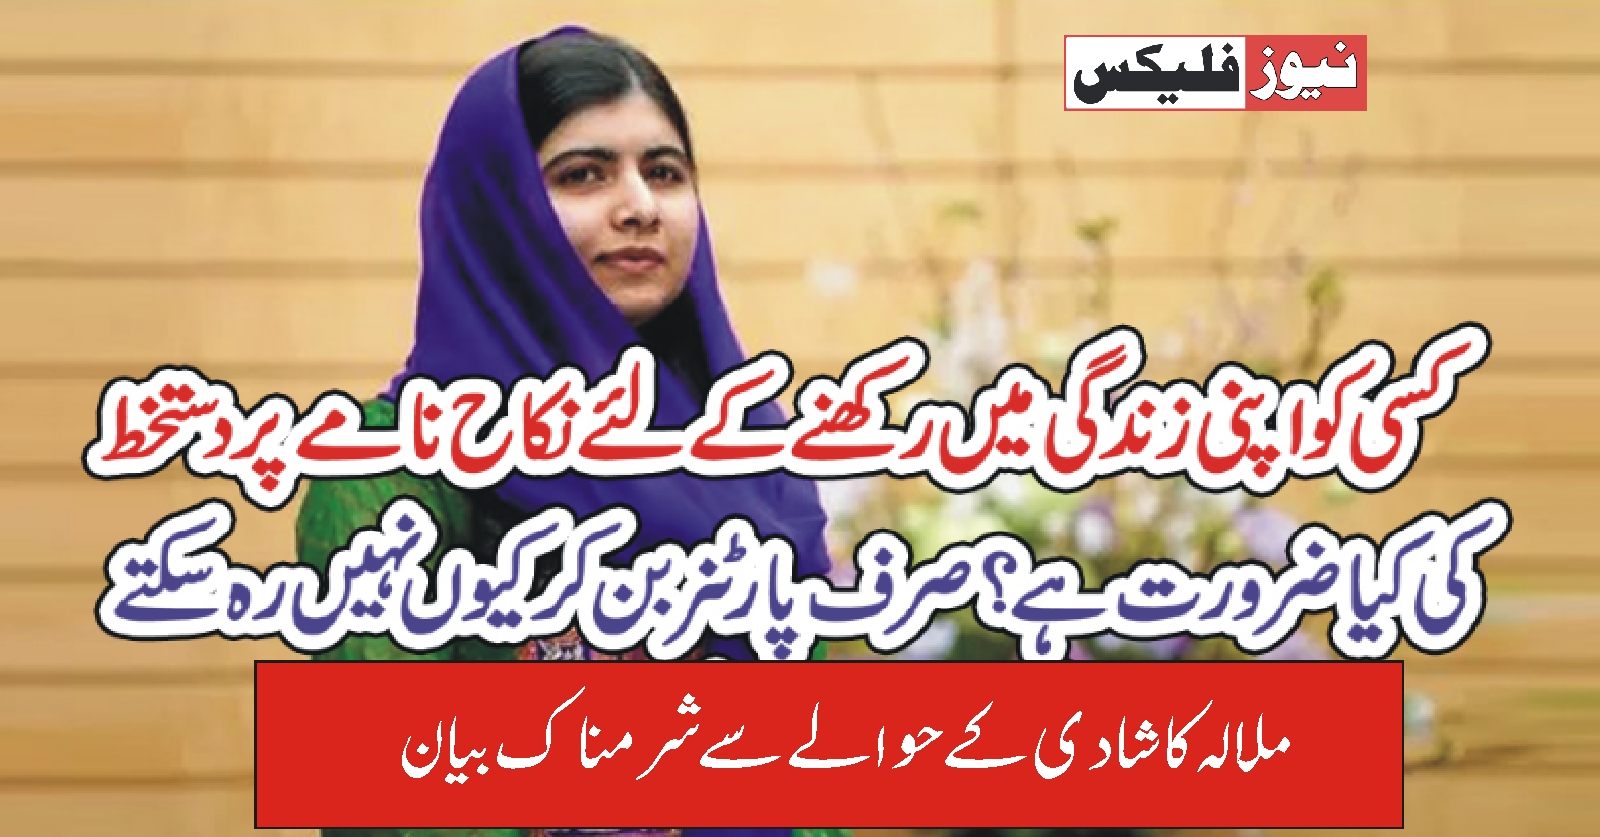 ملالہ کا شادی کے حوالے سے شرم ناک بیان